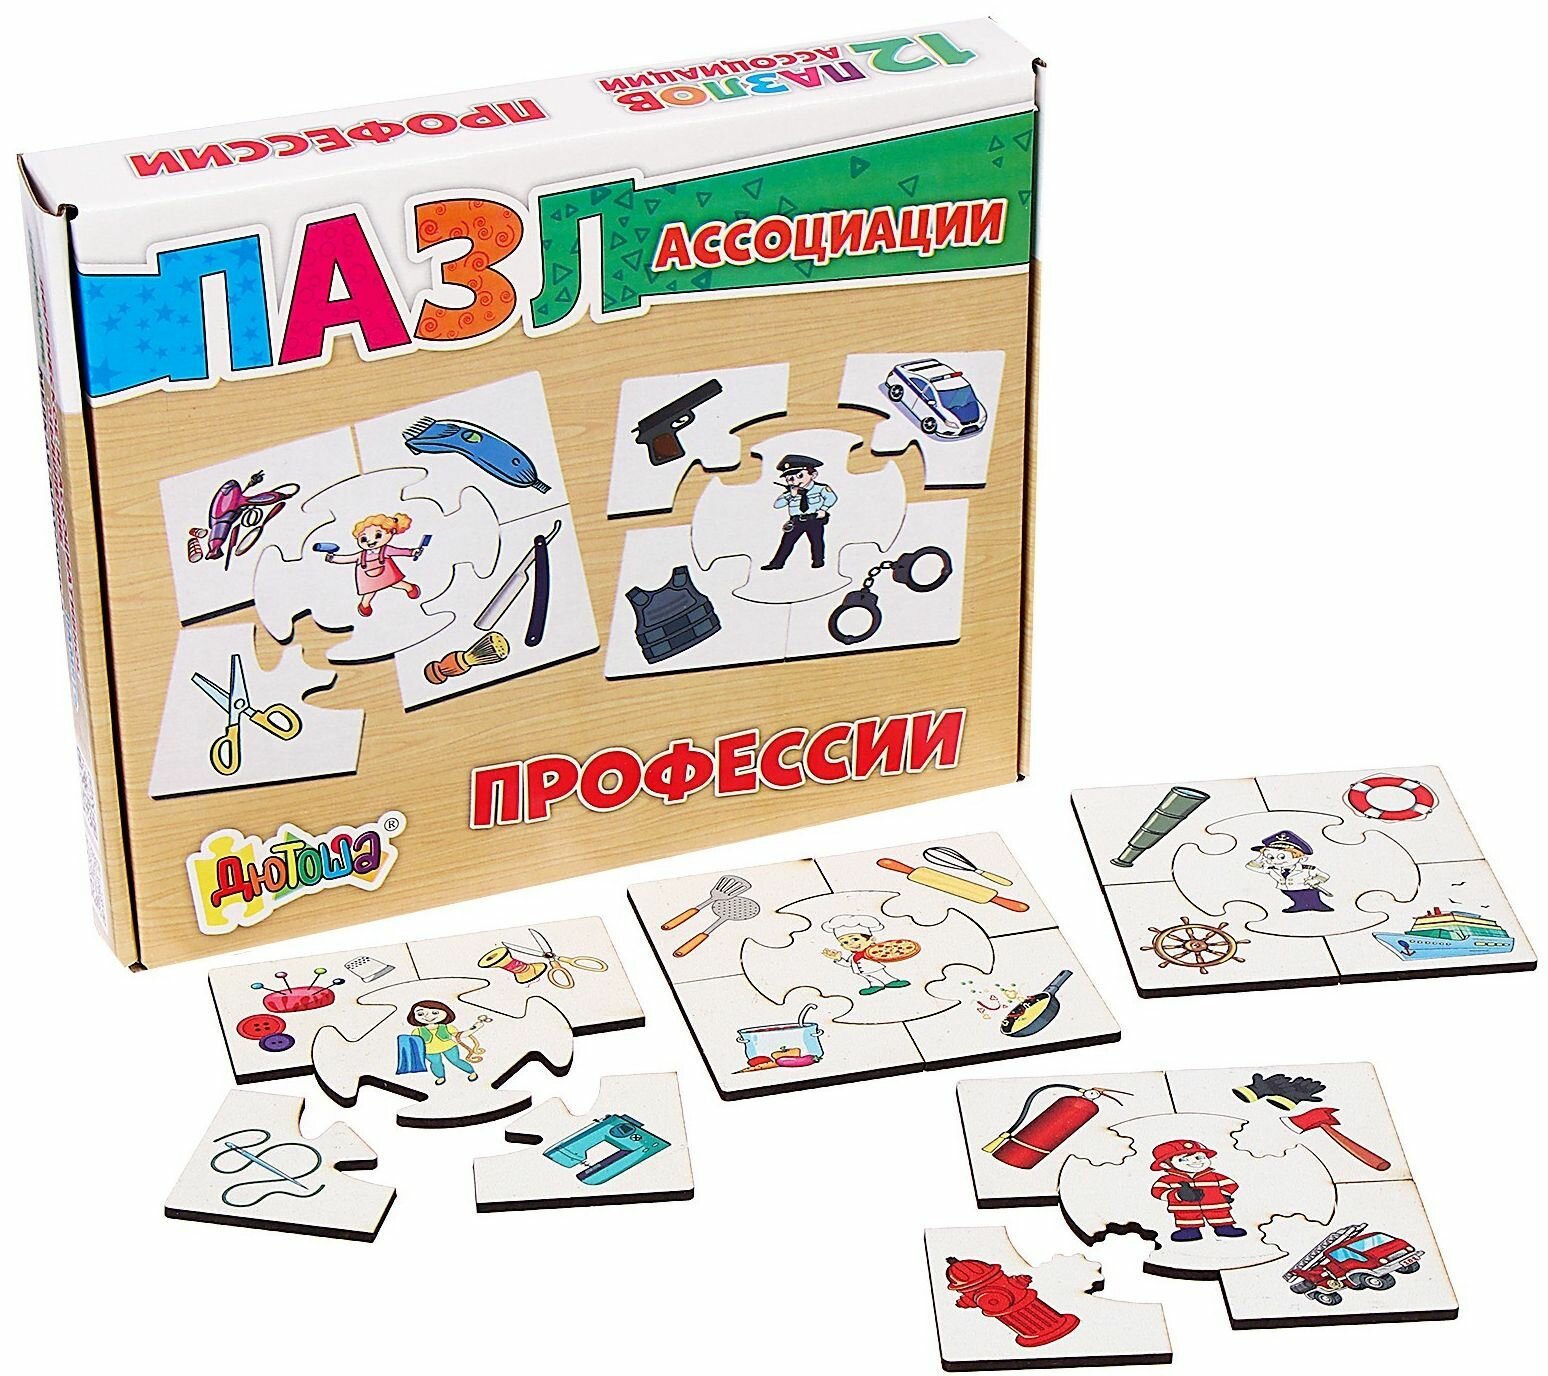 Развивающий игровой набор "Профессии" из 12 пазлов-ассоциаций, деревянная игра-головоломка для детей